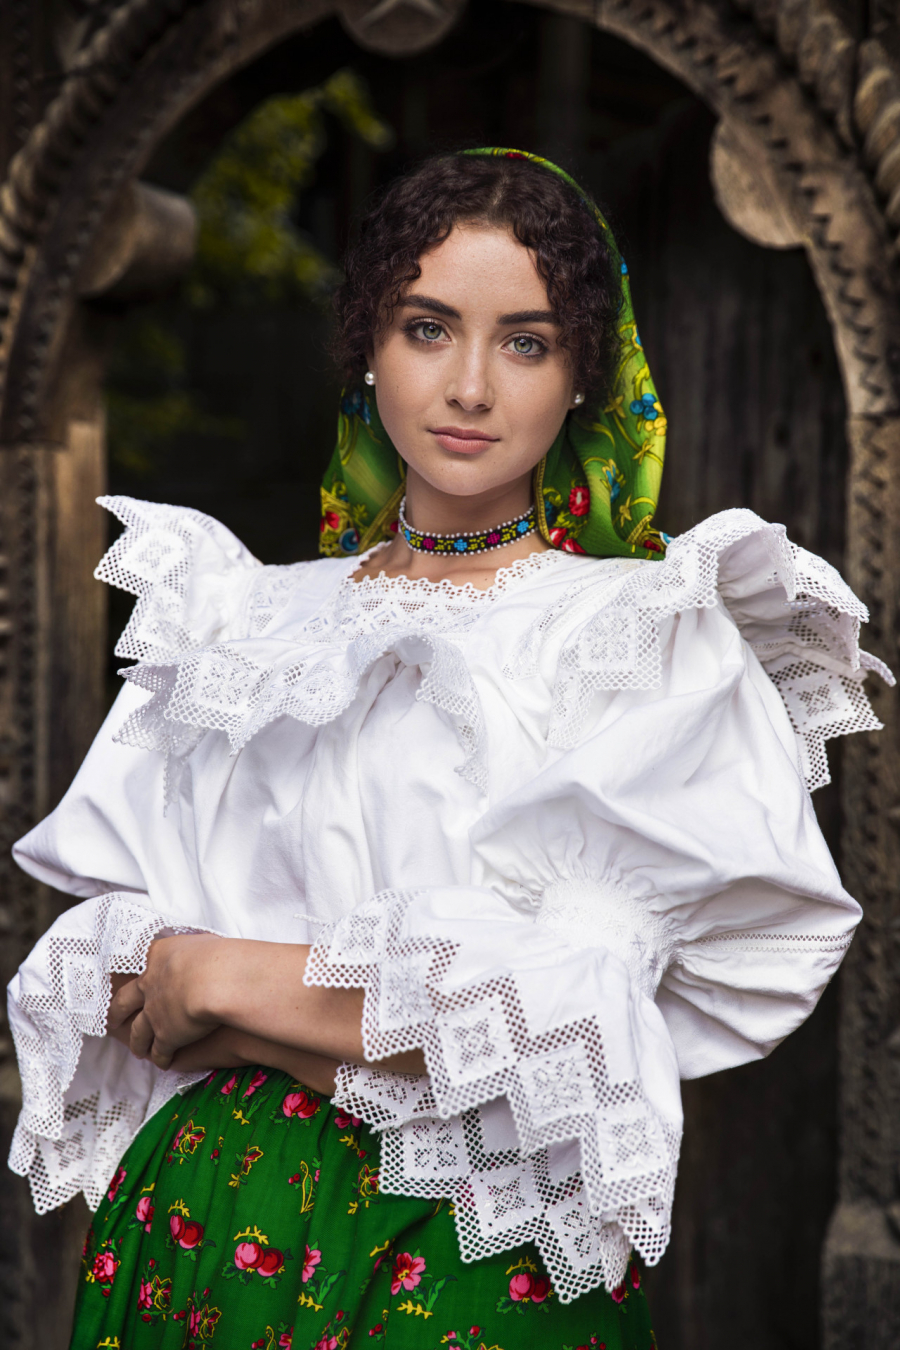 Gabriela đến từ Maramures, một vùng thuộc Bắc Romania nổi tiếng với văn hóa truyền thống đa dạng.